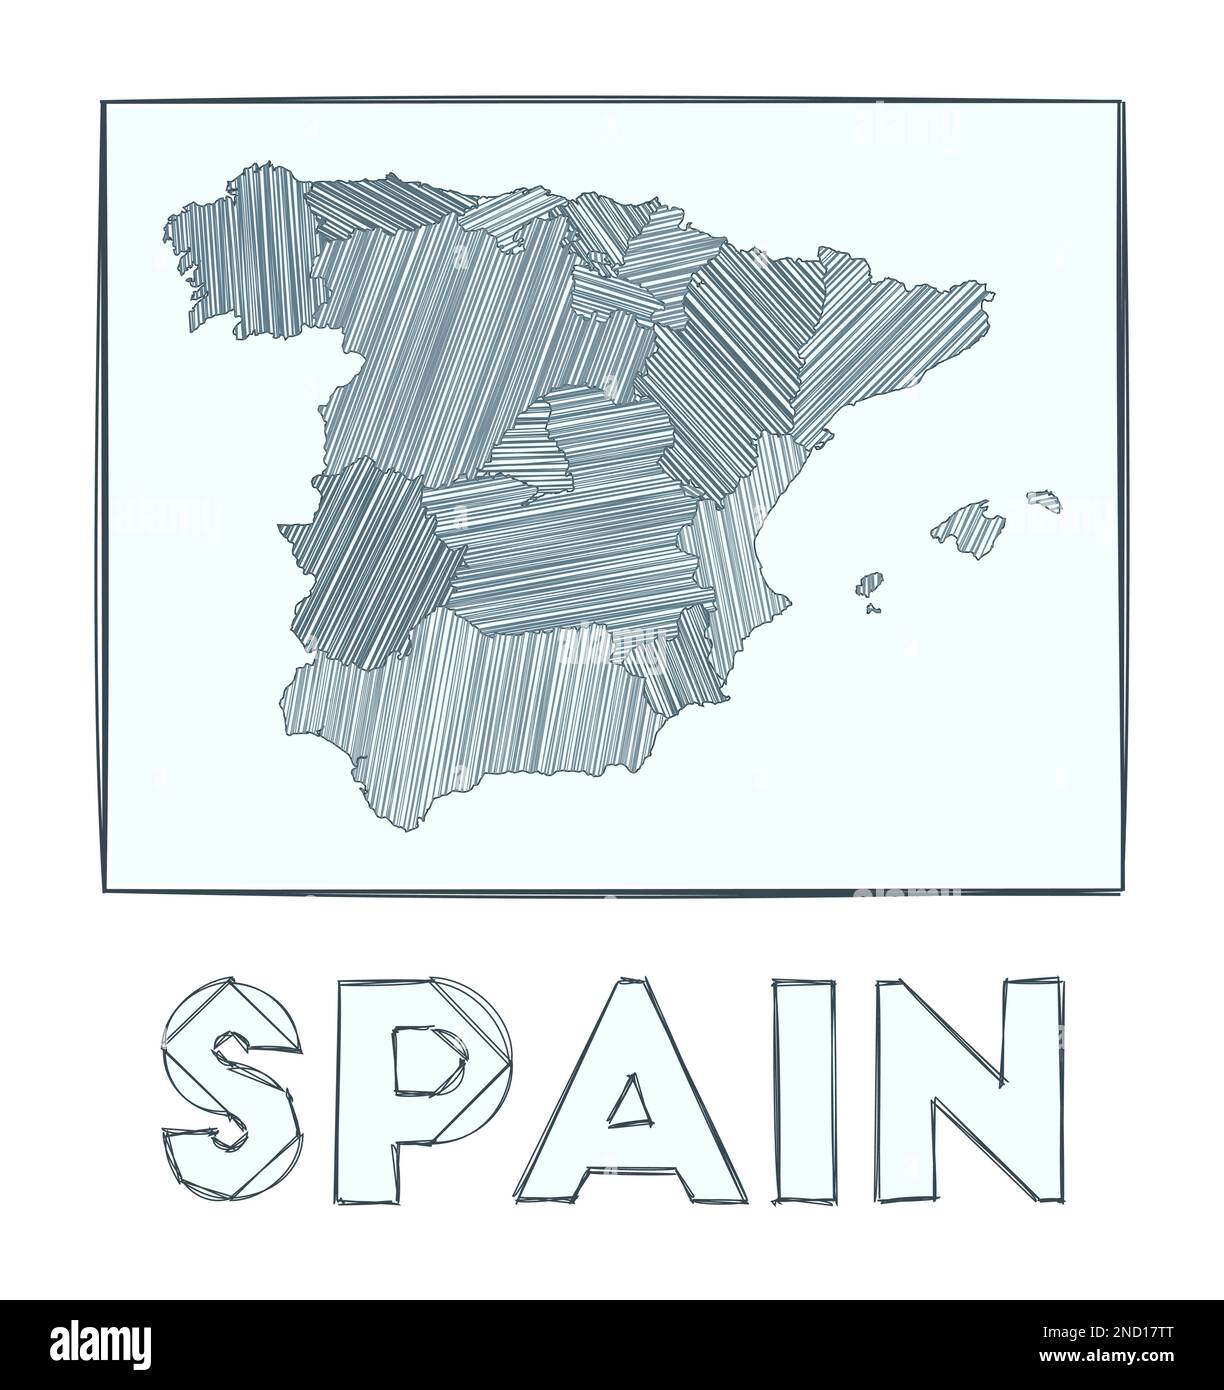 Schizzo della mappa della Spagna. Mappa del paese disegnata a mano in scala di grigi. Regioni riempite con strisce di hachure. Illustrazione vettoriale. Illustrazione Vettoriale